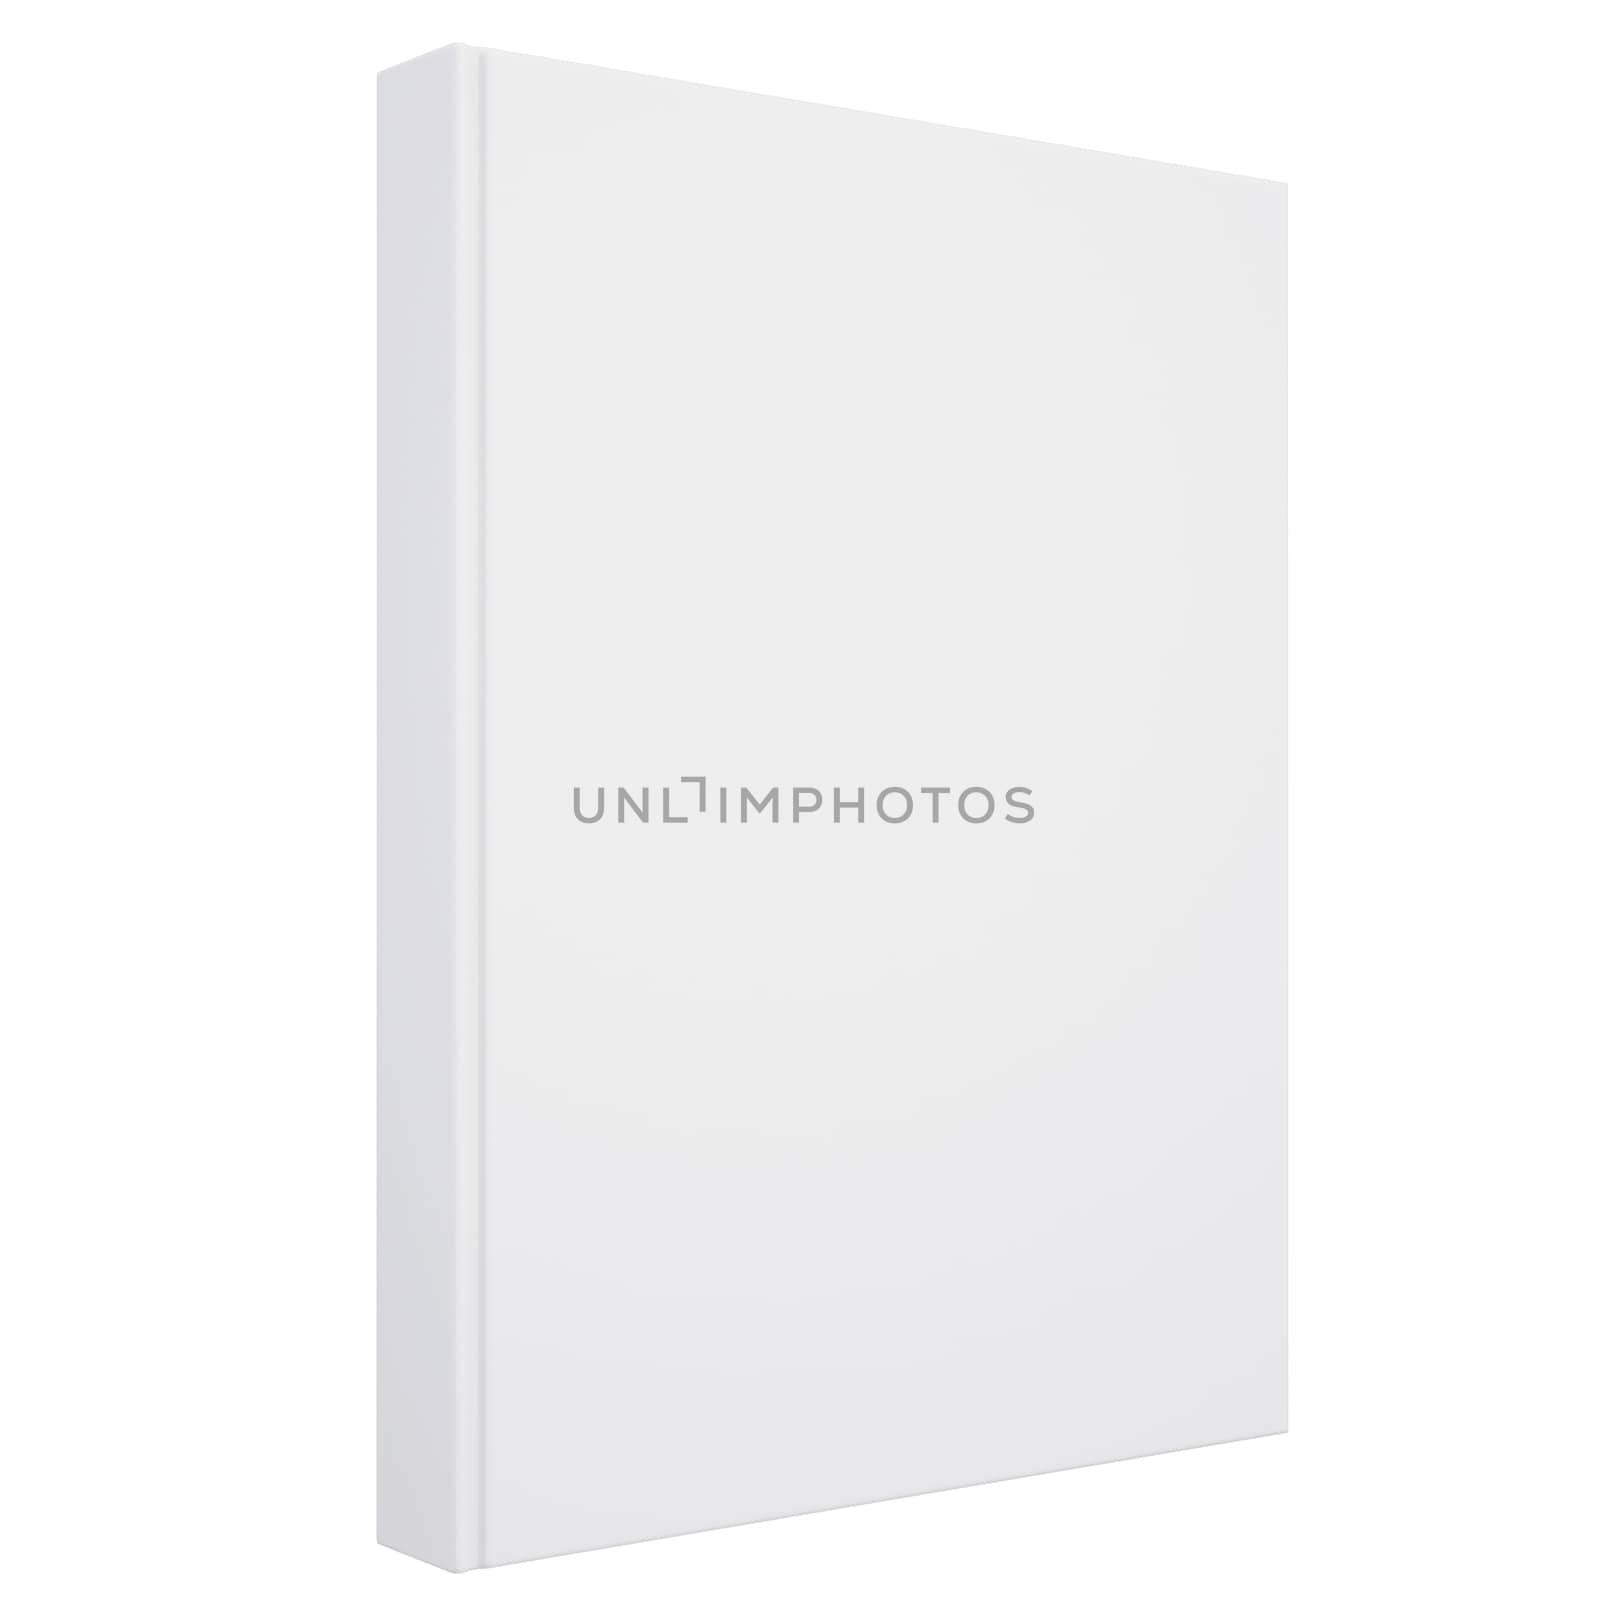 A white book by cherezoff